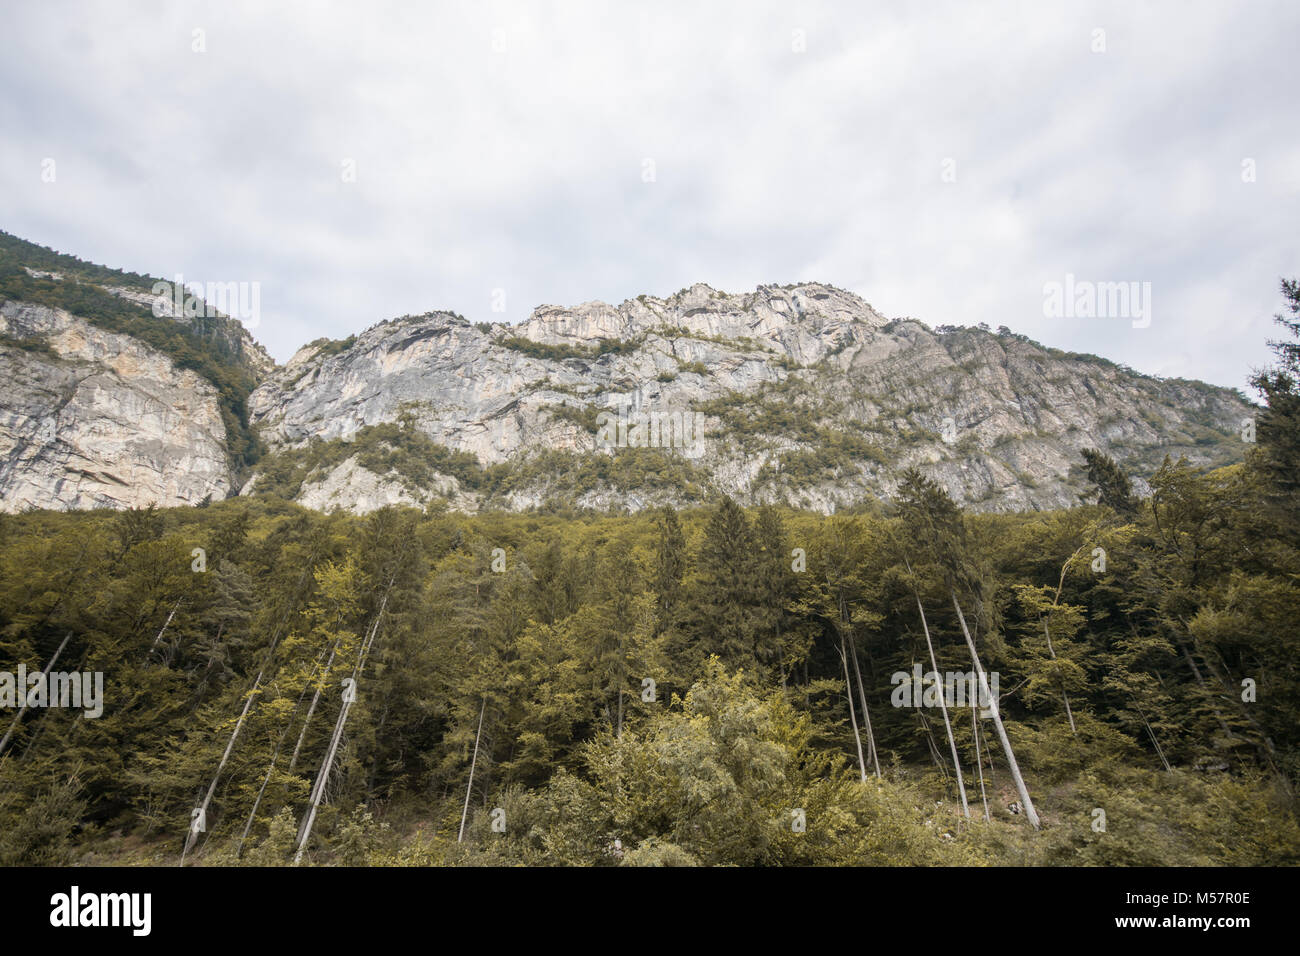 Schönsten Berge der gorgous Schweizer Alpen in der Schweiz, in Europa auf Reisen Reise Stockfoto